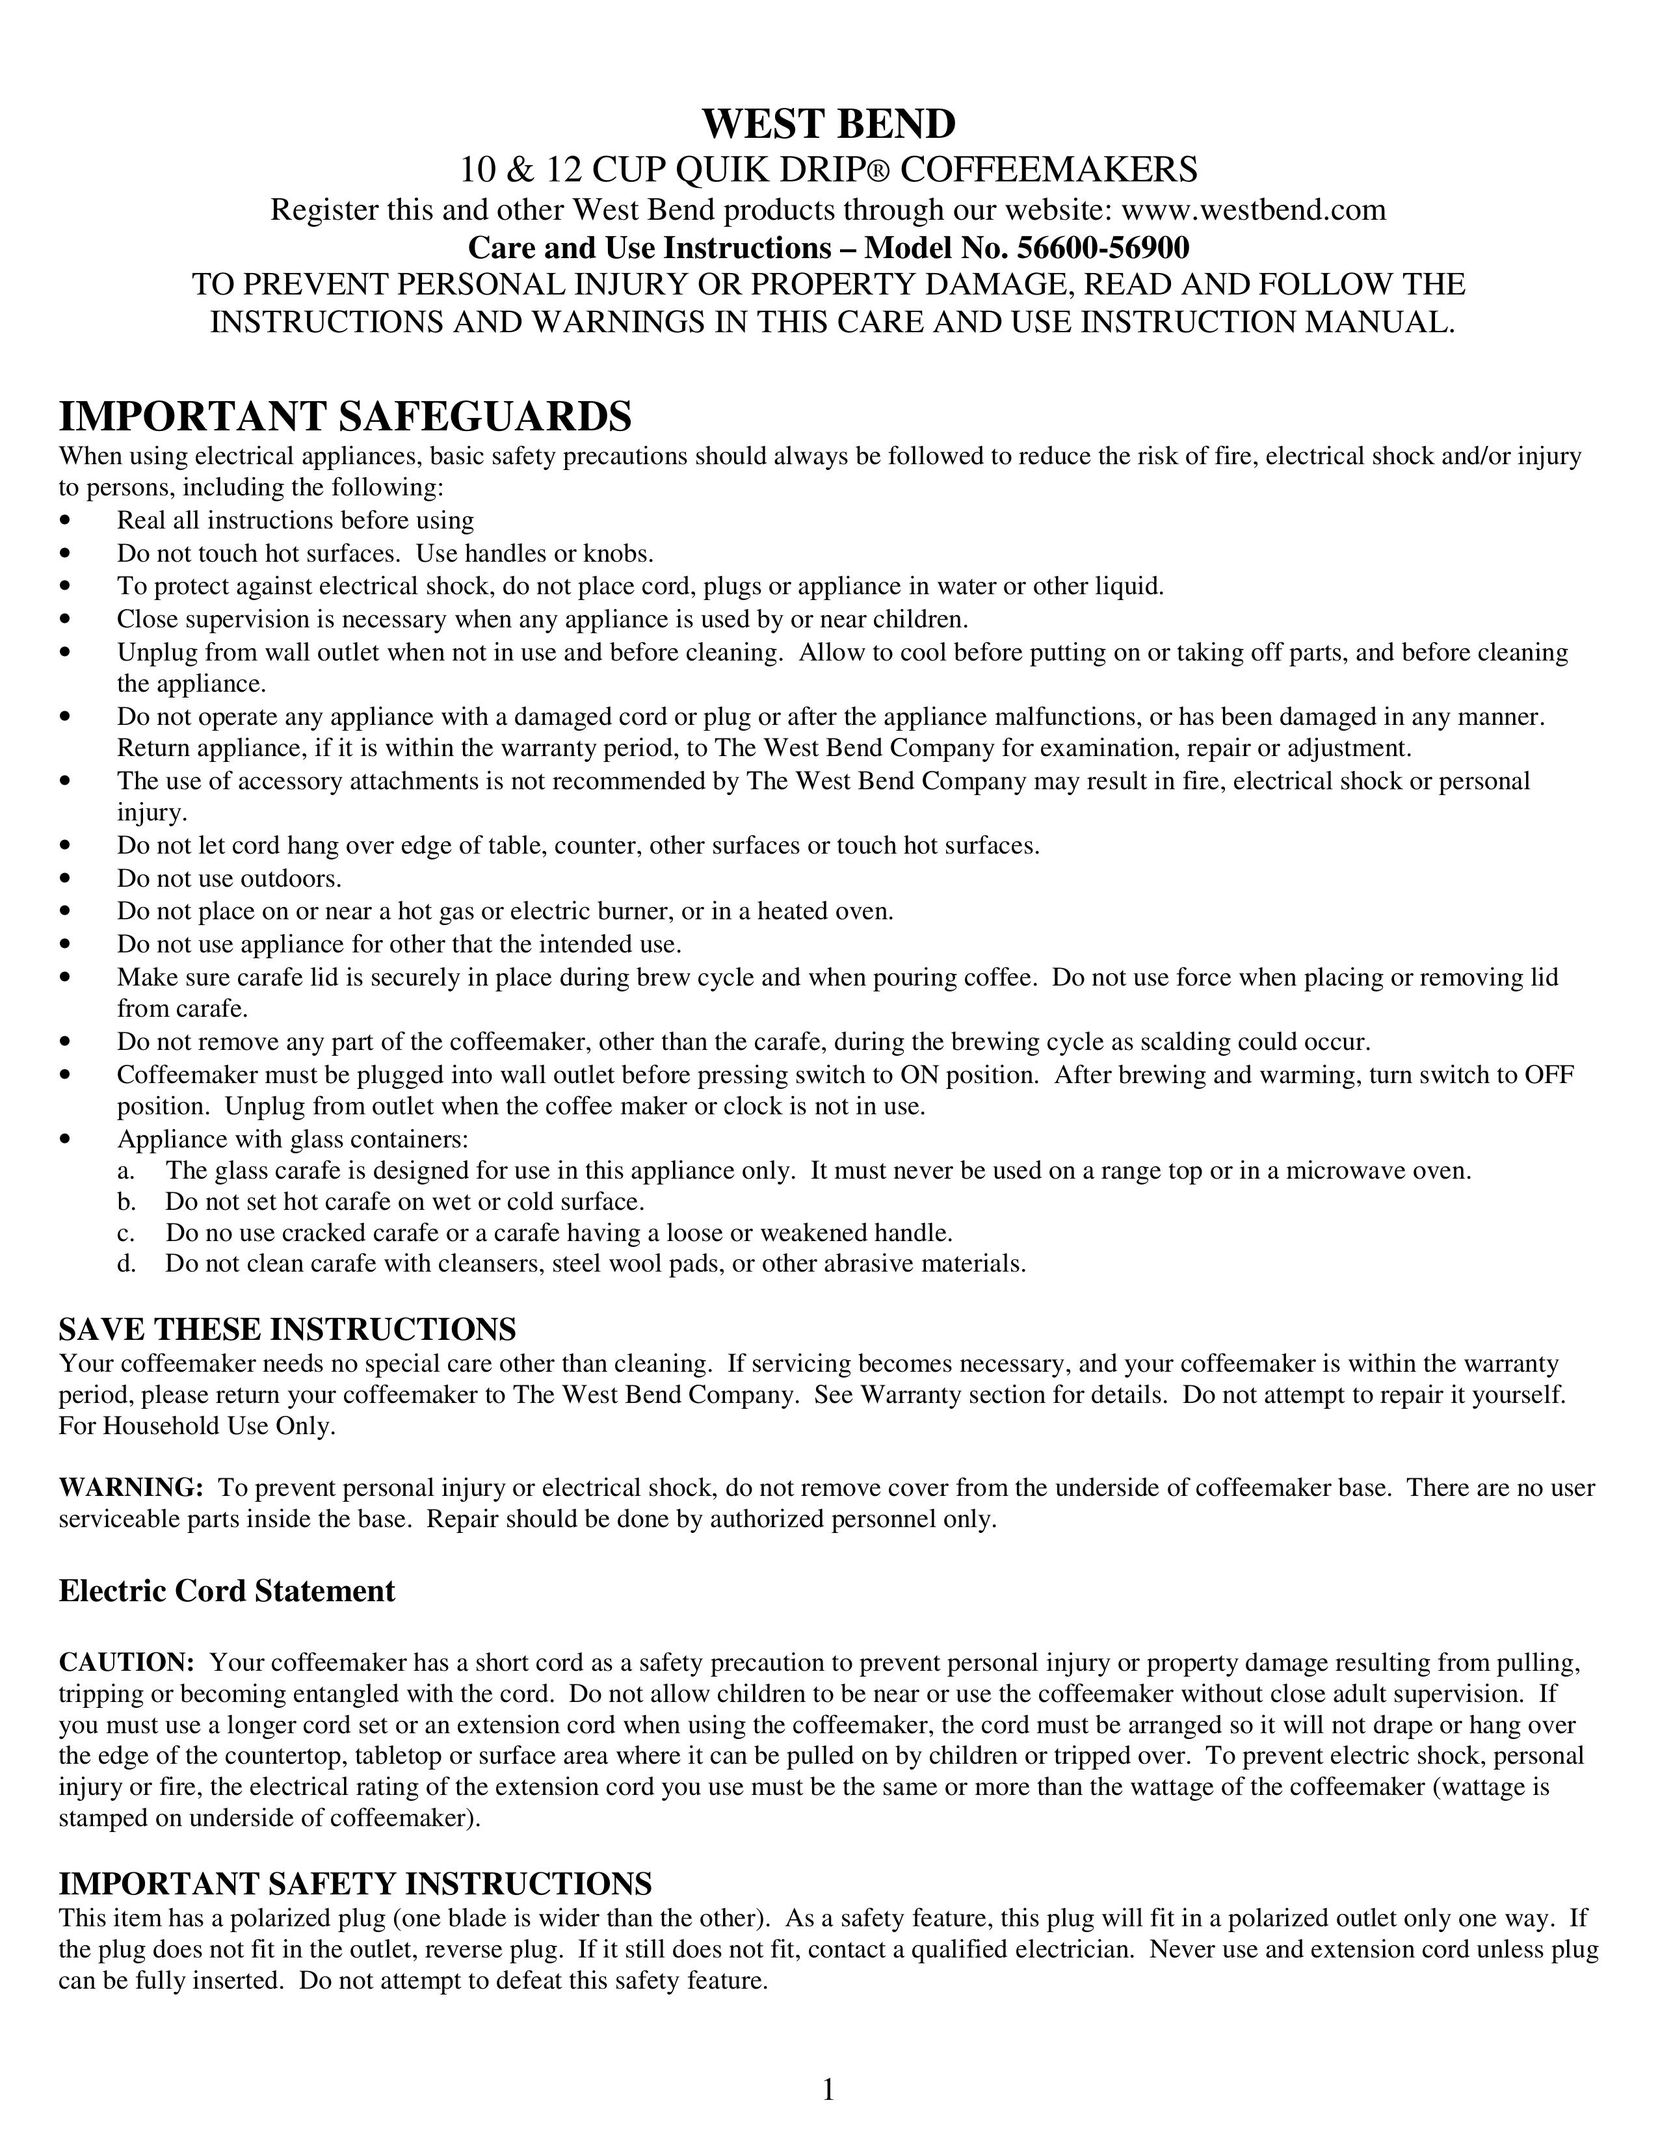 West Bend 56600 Coffeemaker User Manual